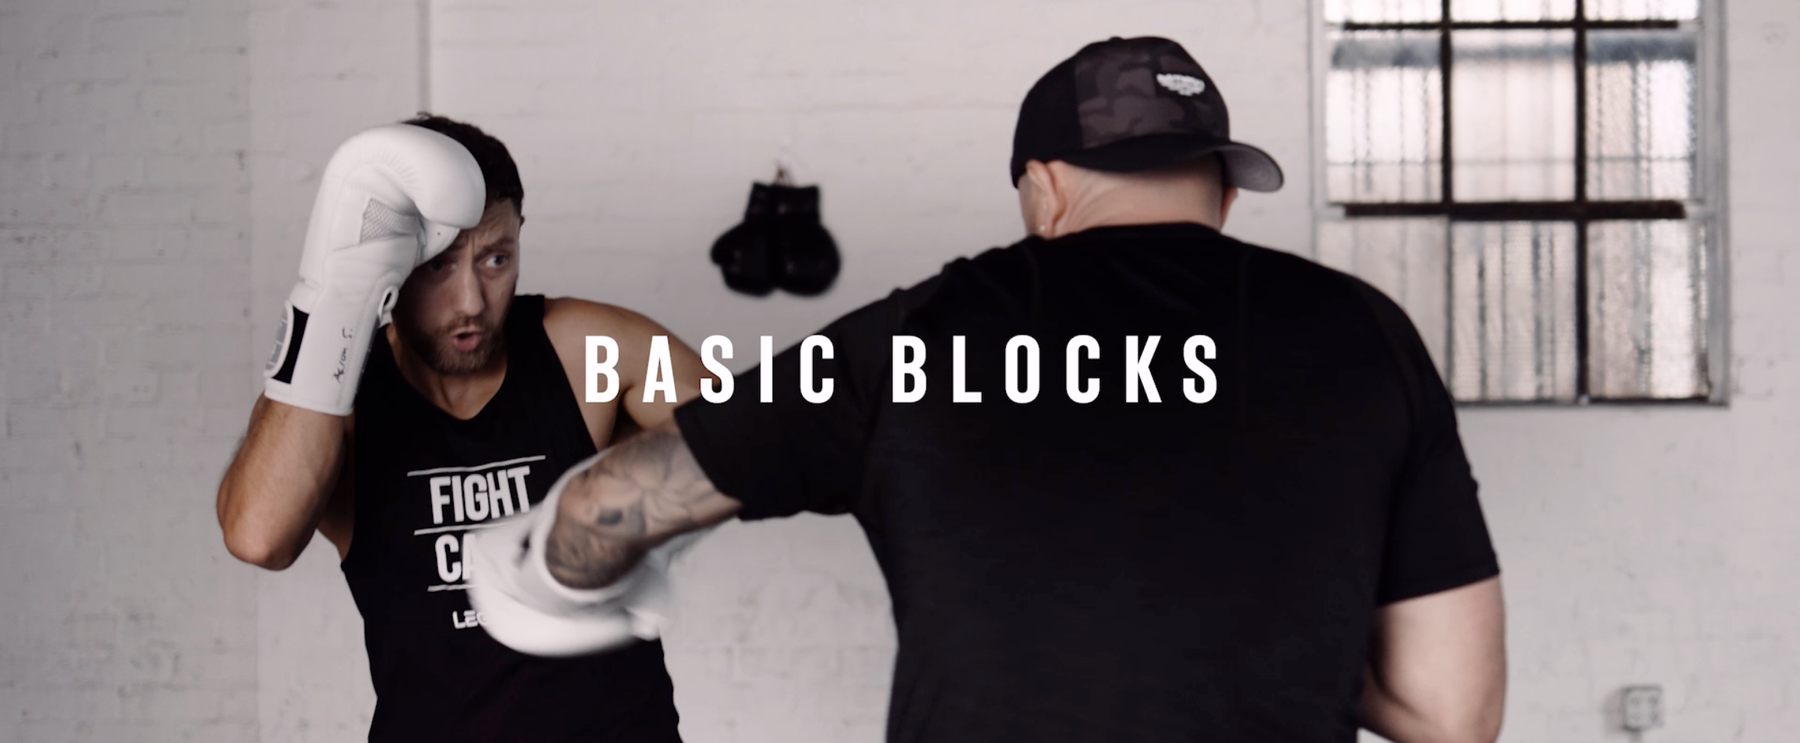 Block, Catch, Parry | Boxing Defense 101